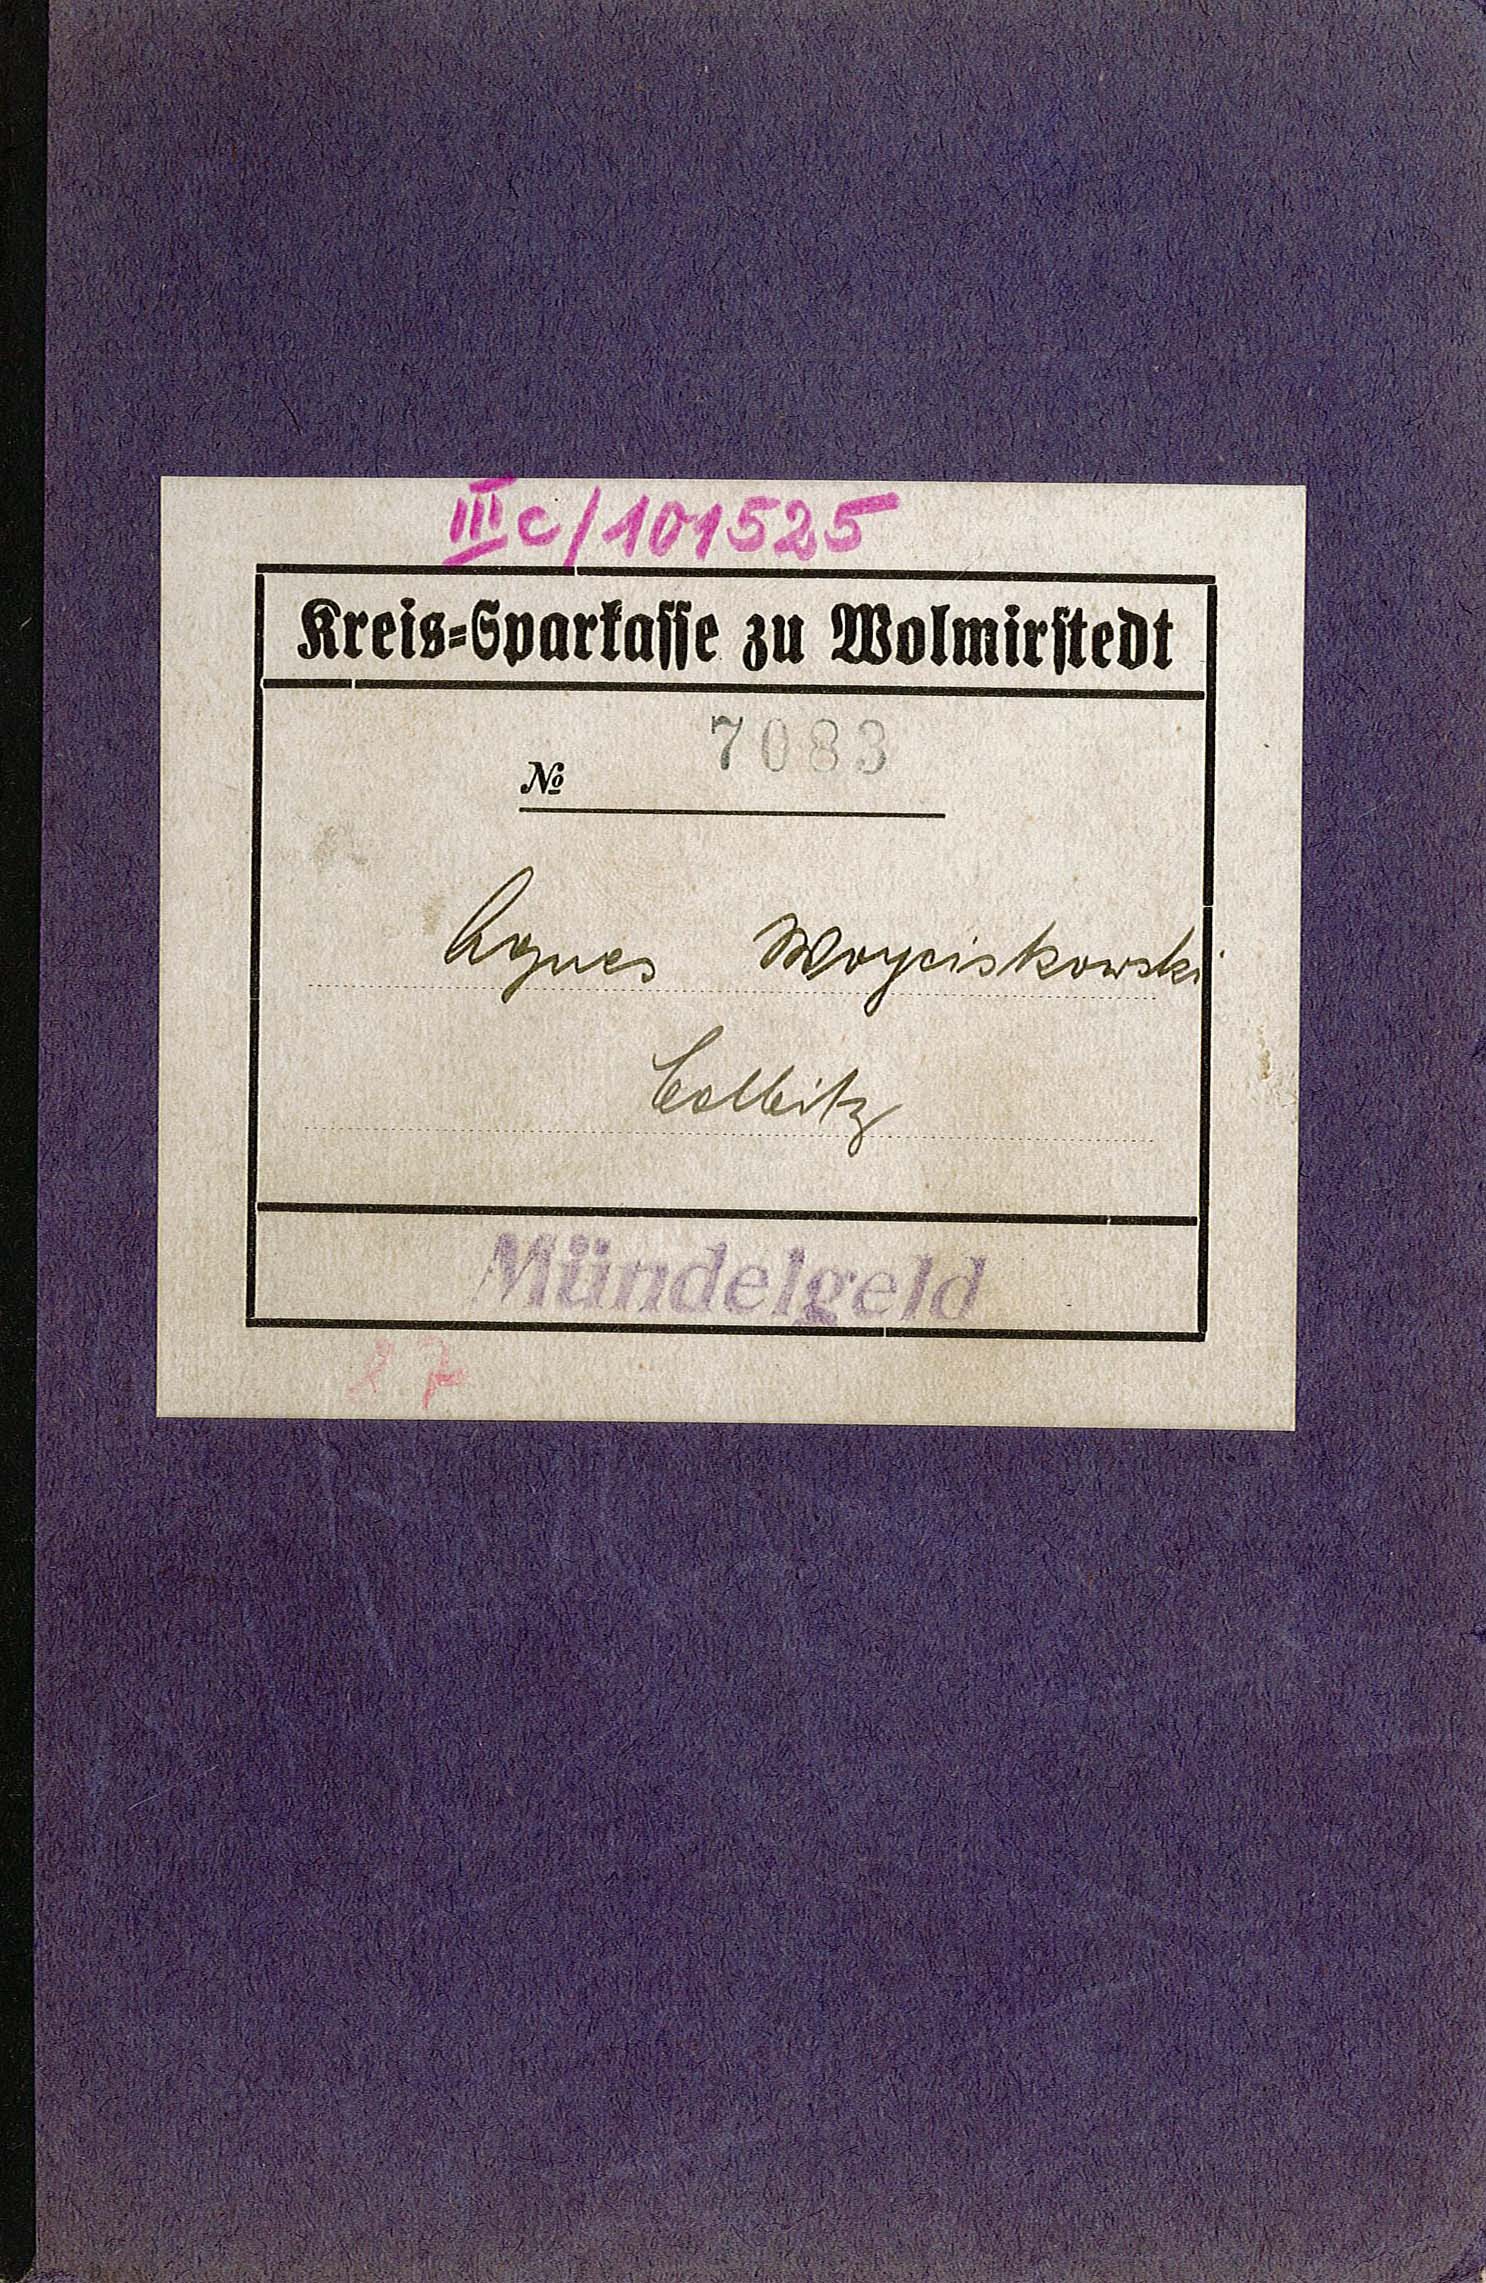 Sparkassen-Abrechnungsbuch für das Mündelgeld von Agnes Woyciskowski, 1939-1945 (Museum Wolmirstedt RR-F)